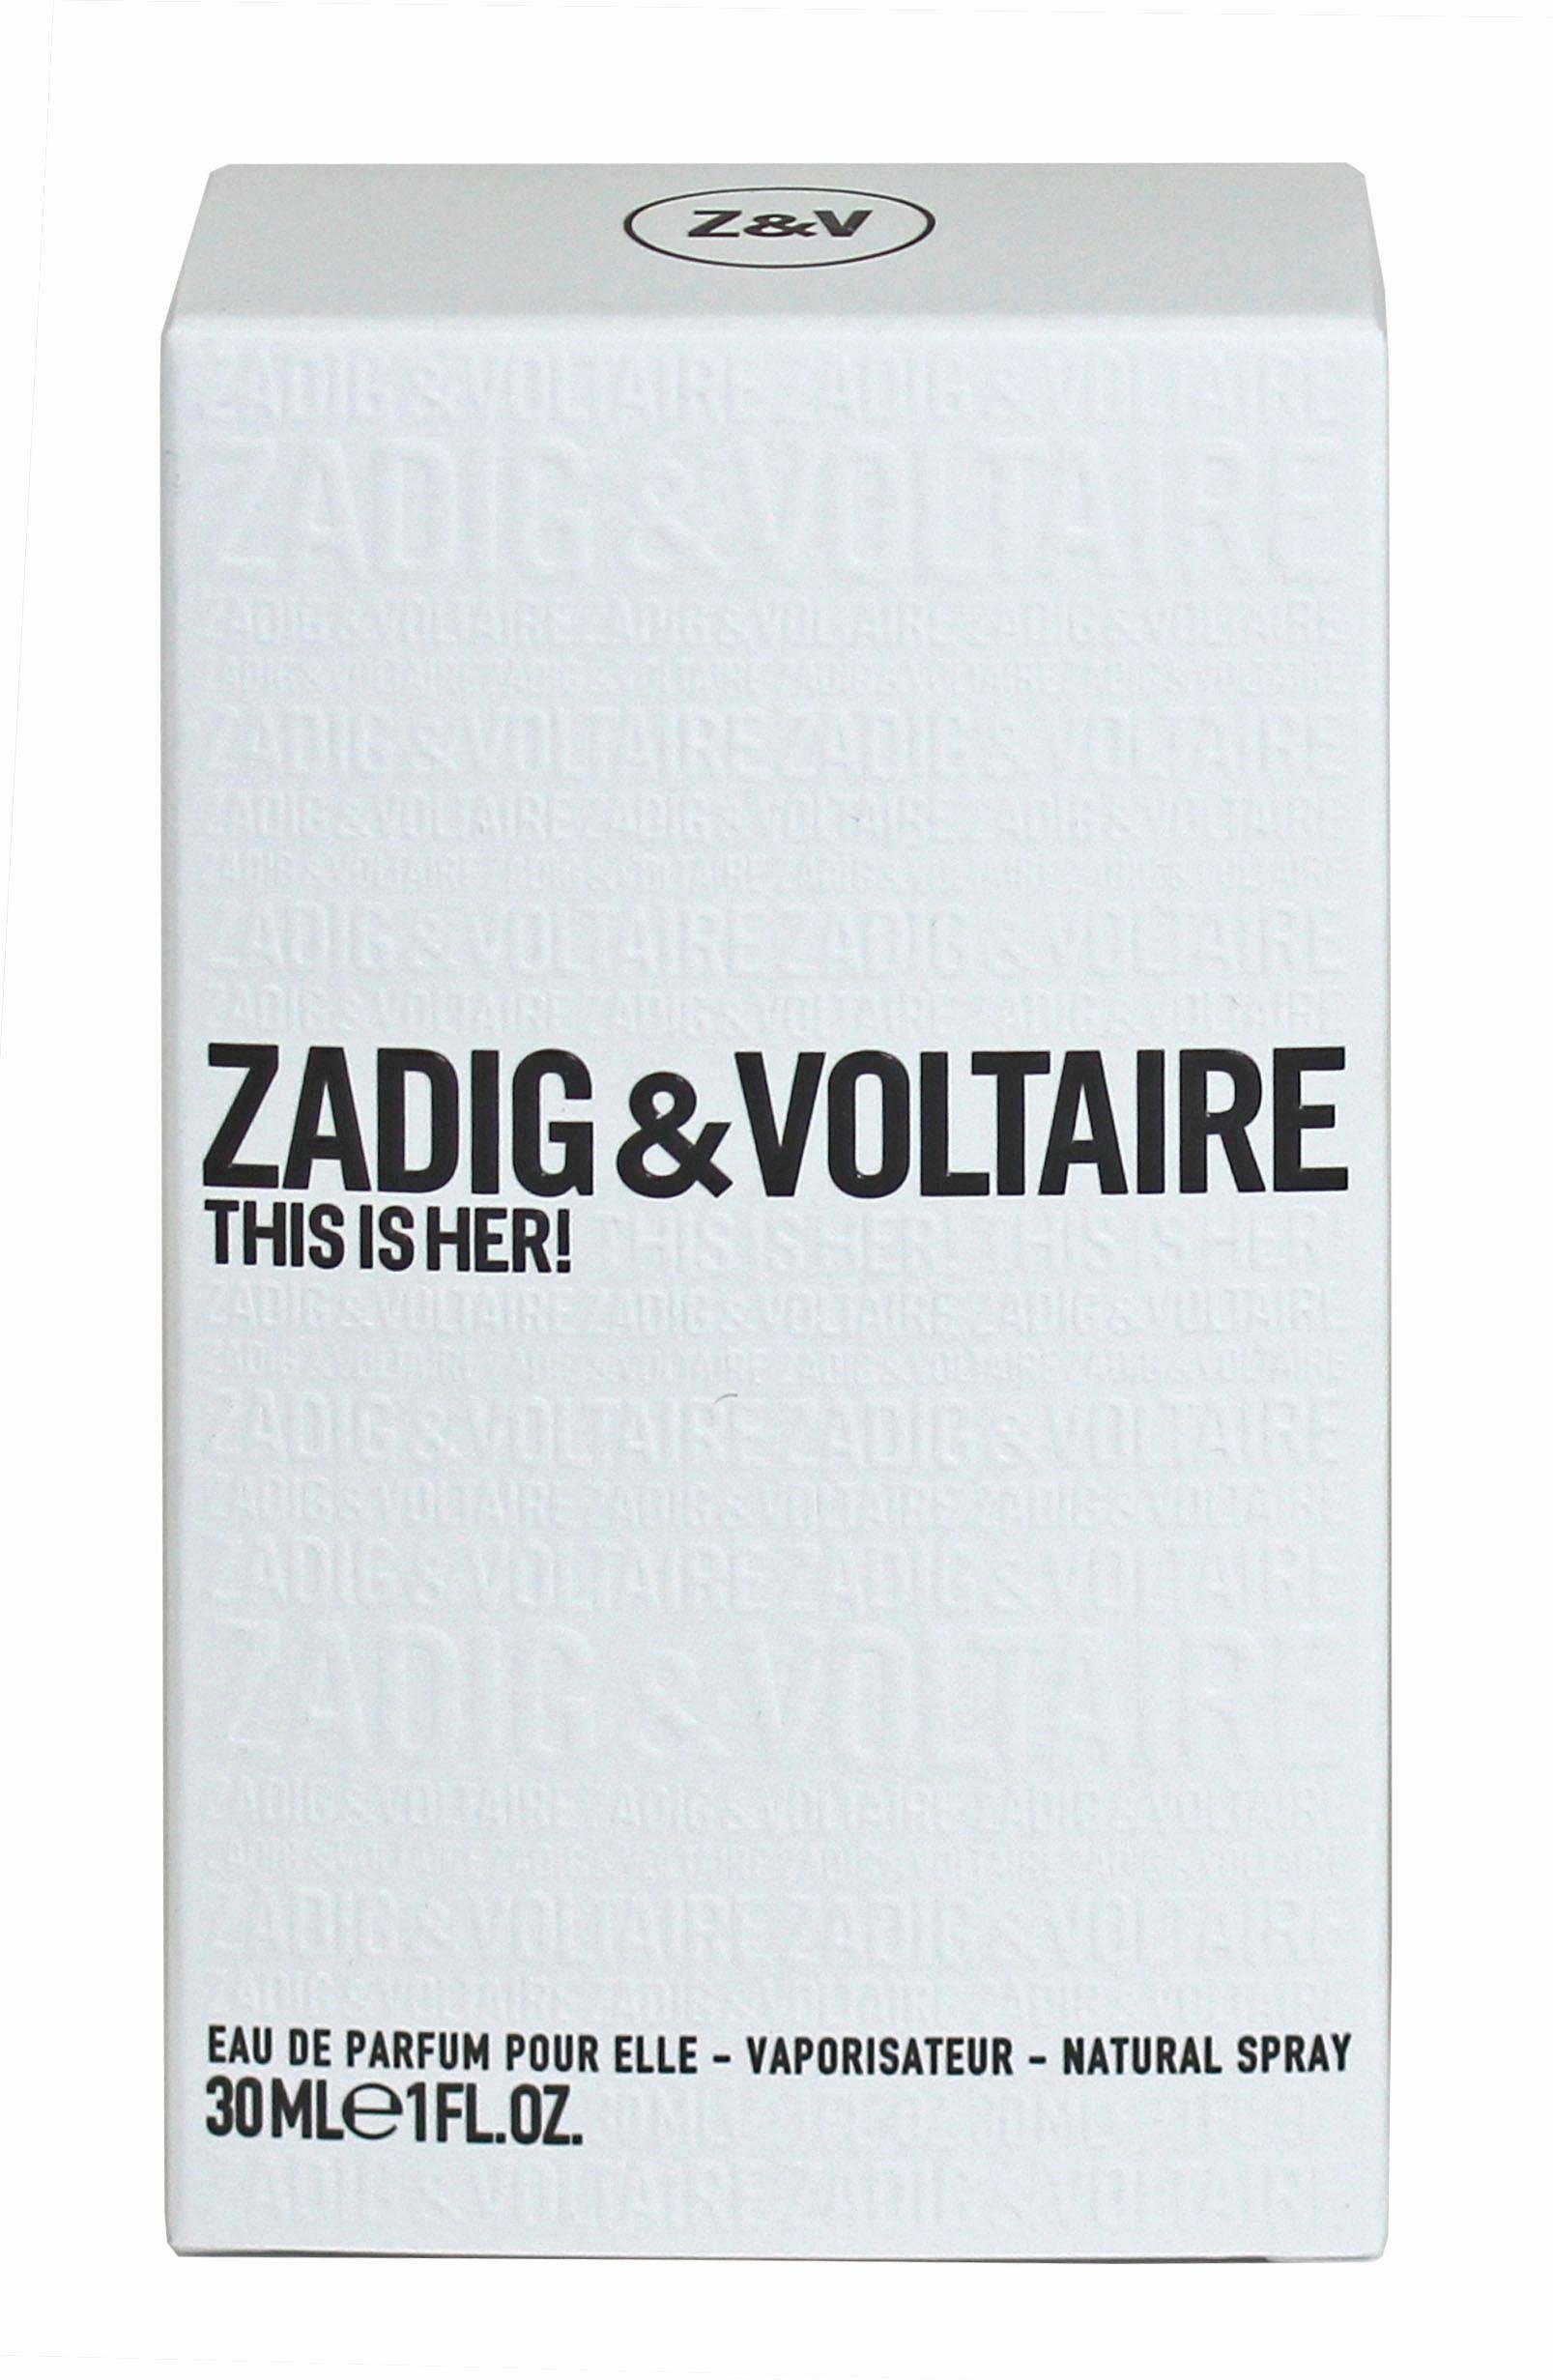 ZADIG & VOLTAIRE Eau de This is Her! Parfum